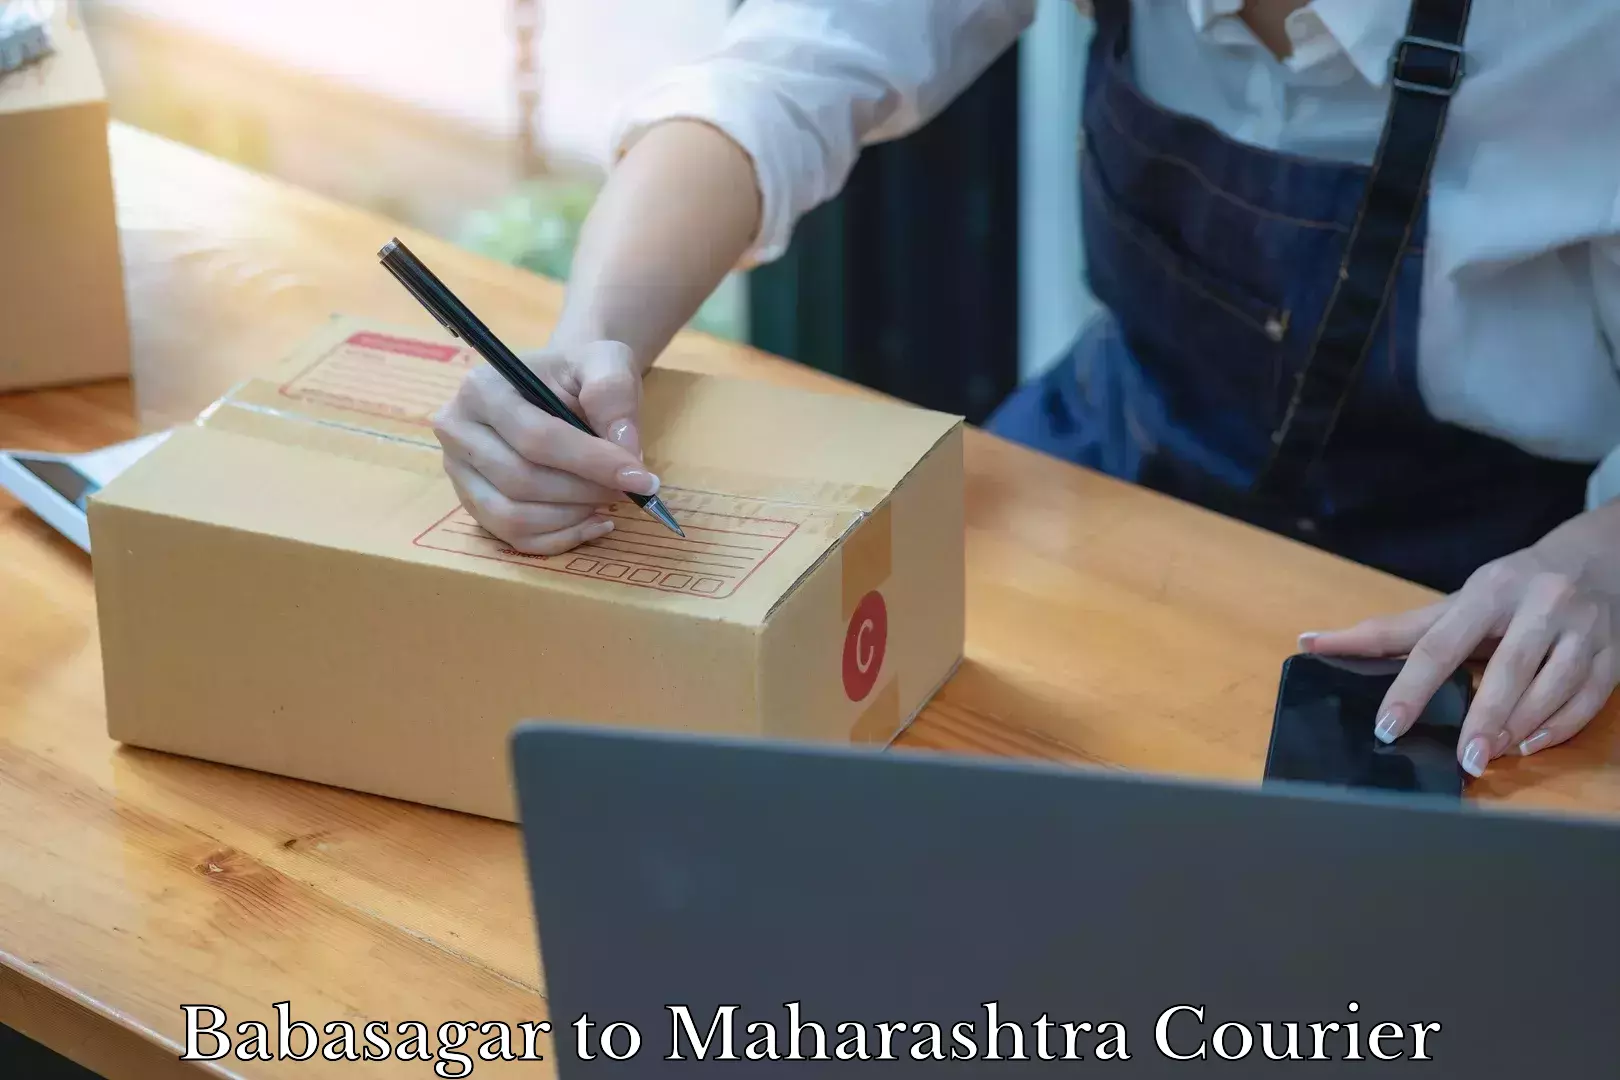 Home relocation experts Babasagar to Maharashtra